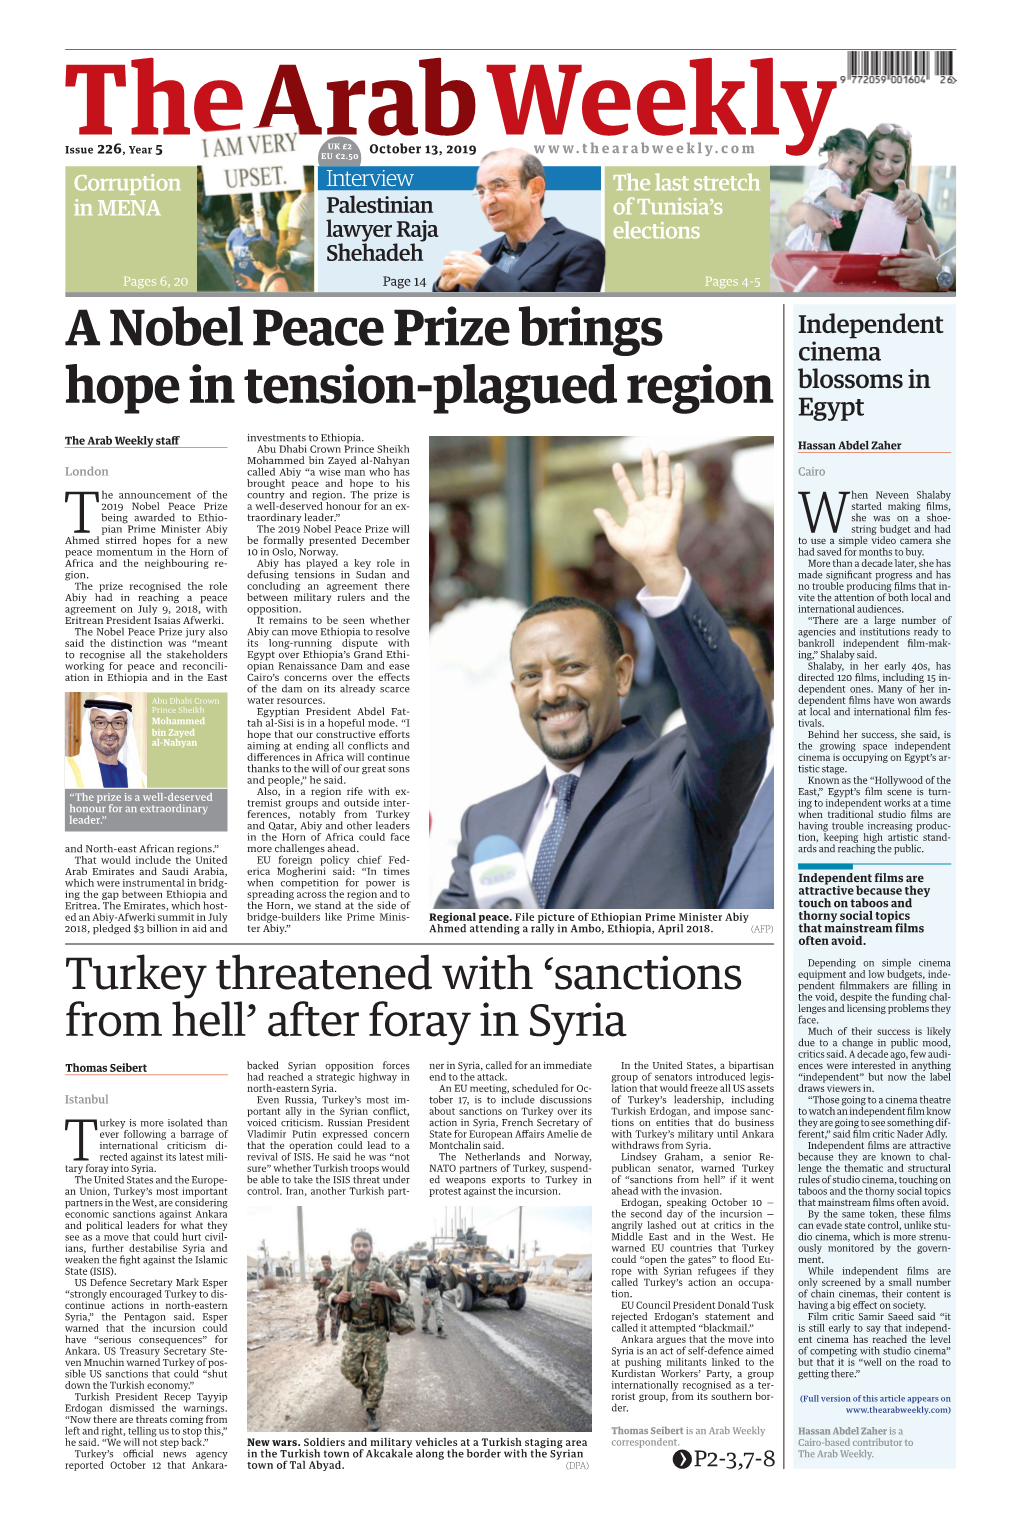 A Nobel Peace Prize Brings Hope in Tension-Plagued Region